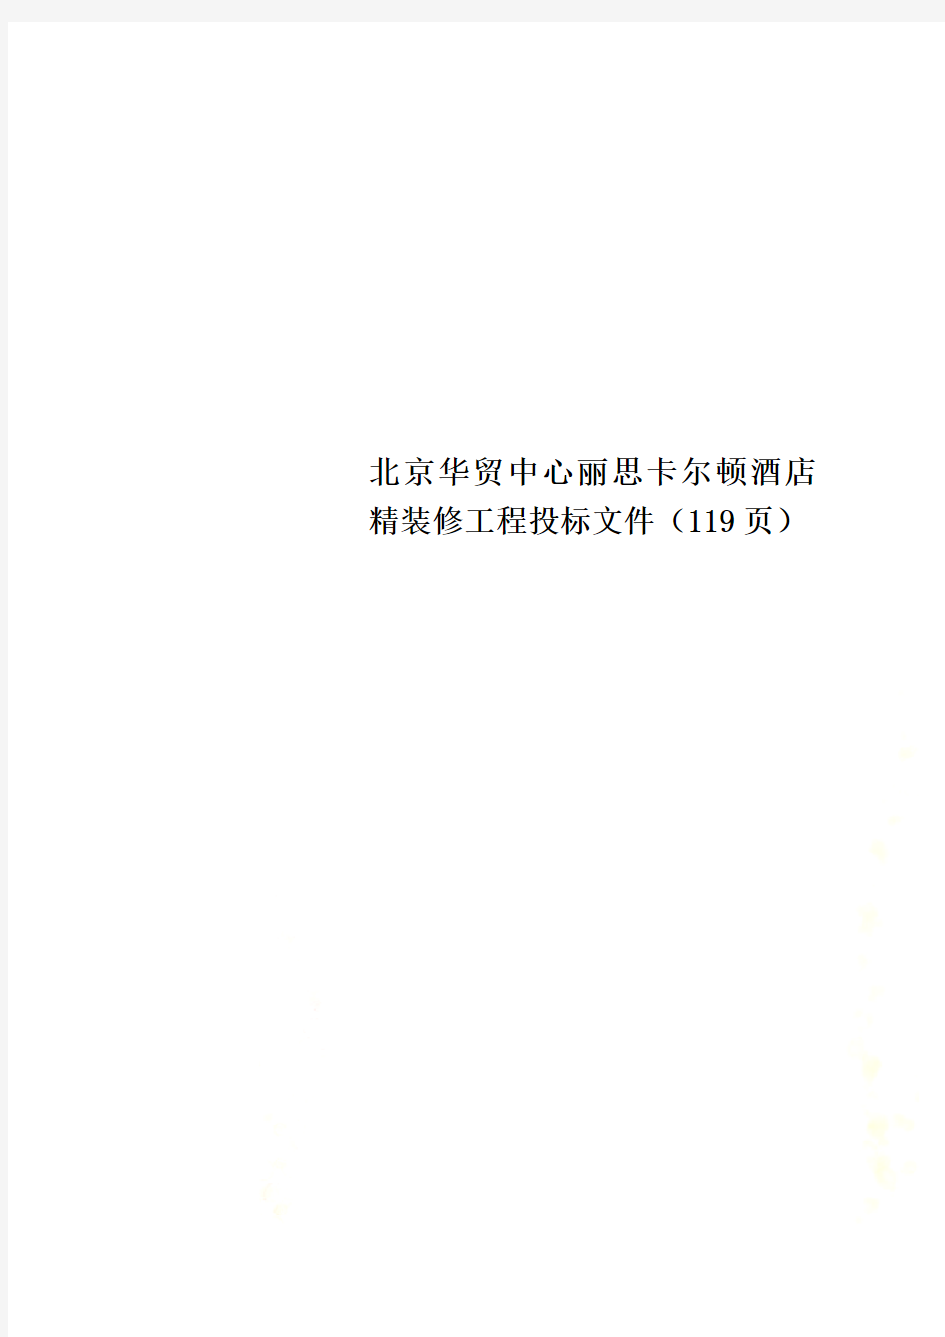 北京华贸中心丽思卡尔顿酒店精装修工程投标文件(119页)